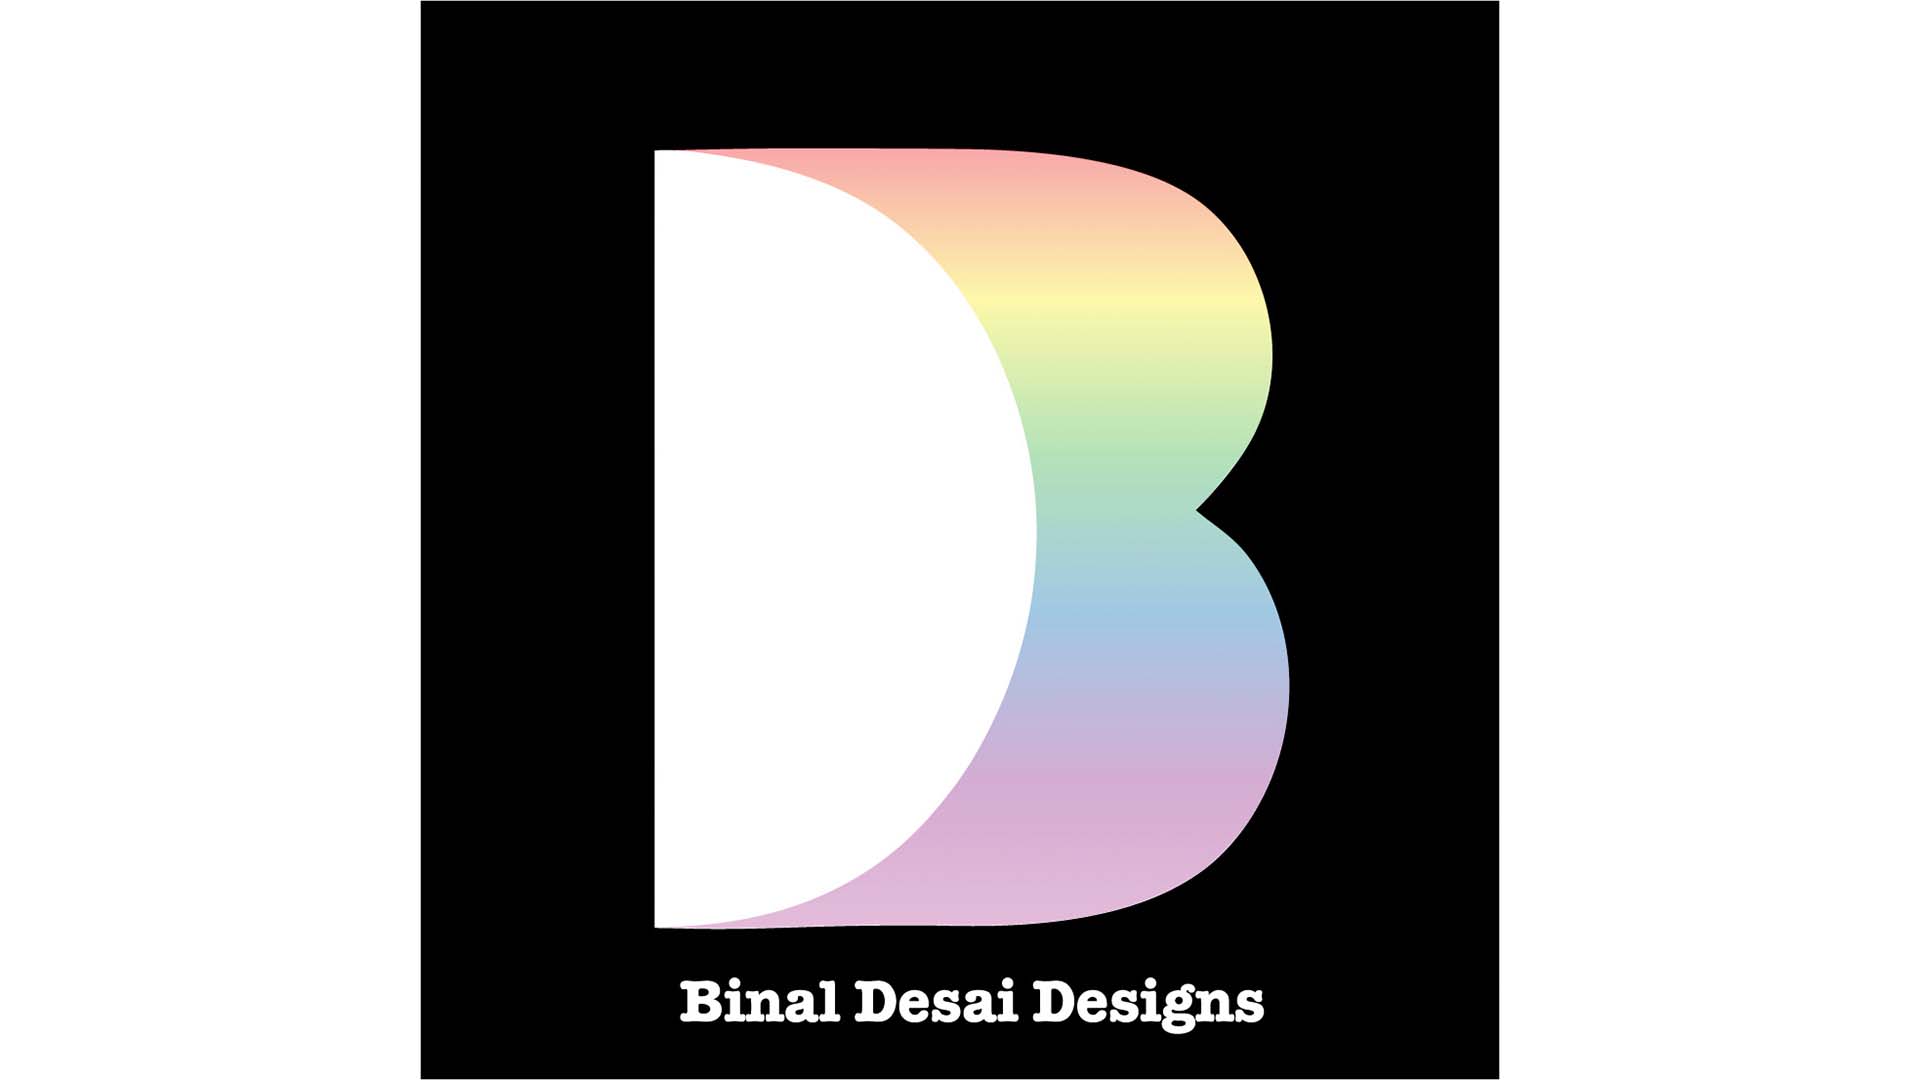  / Binal Desai Designs 